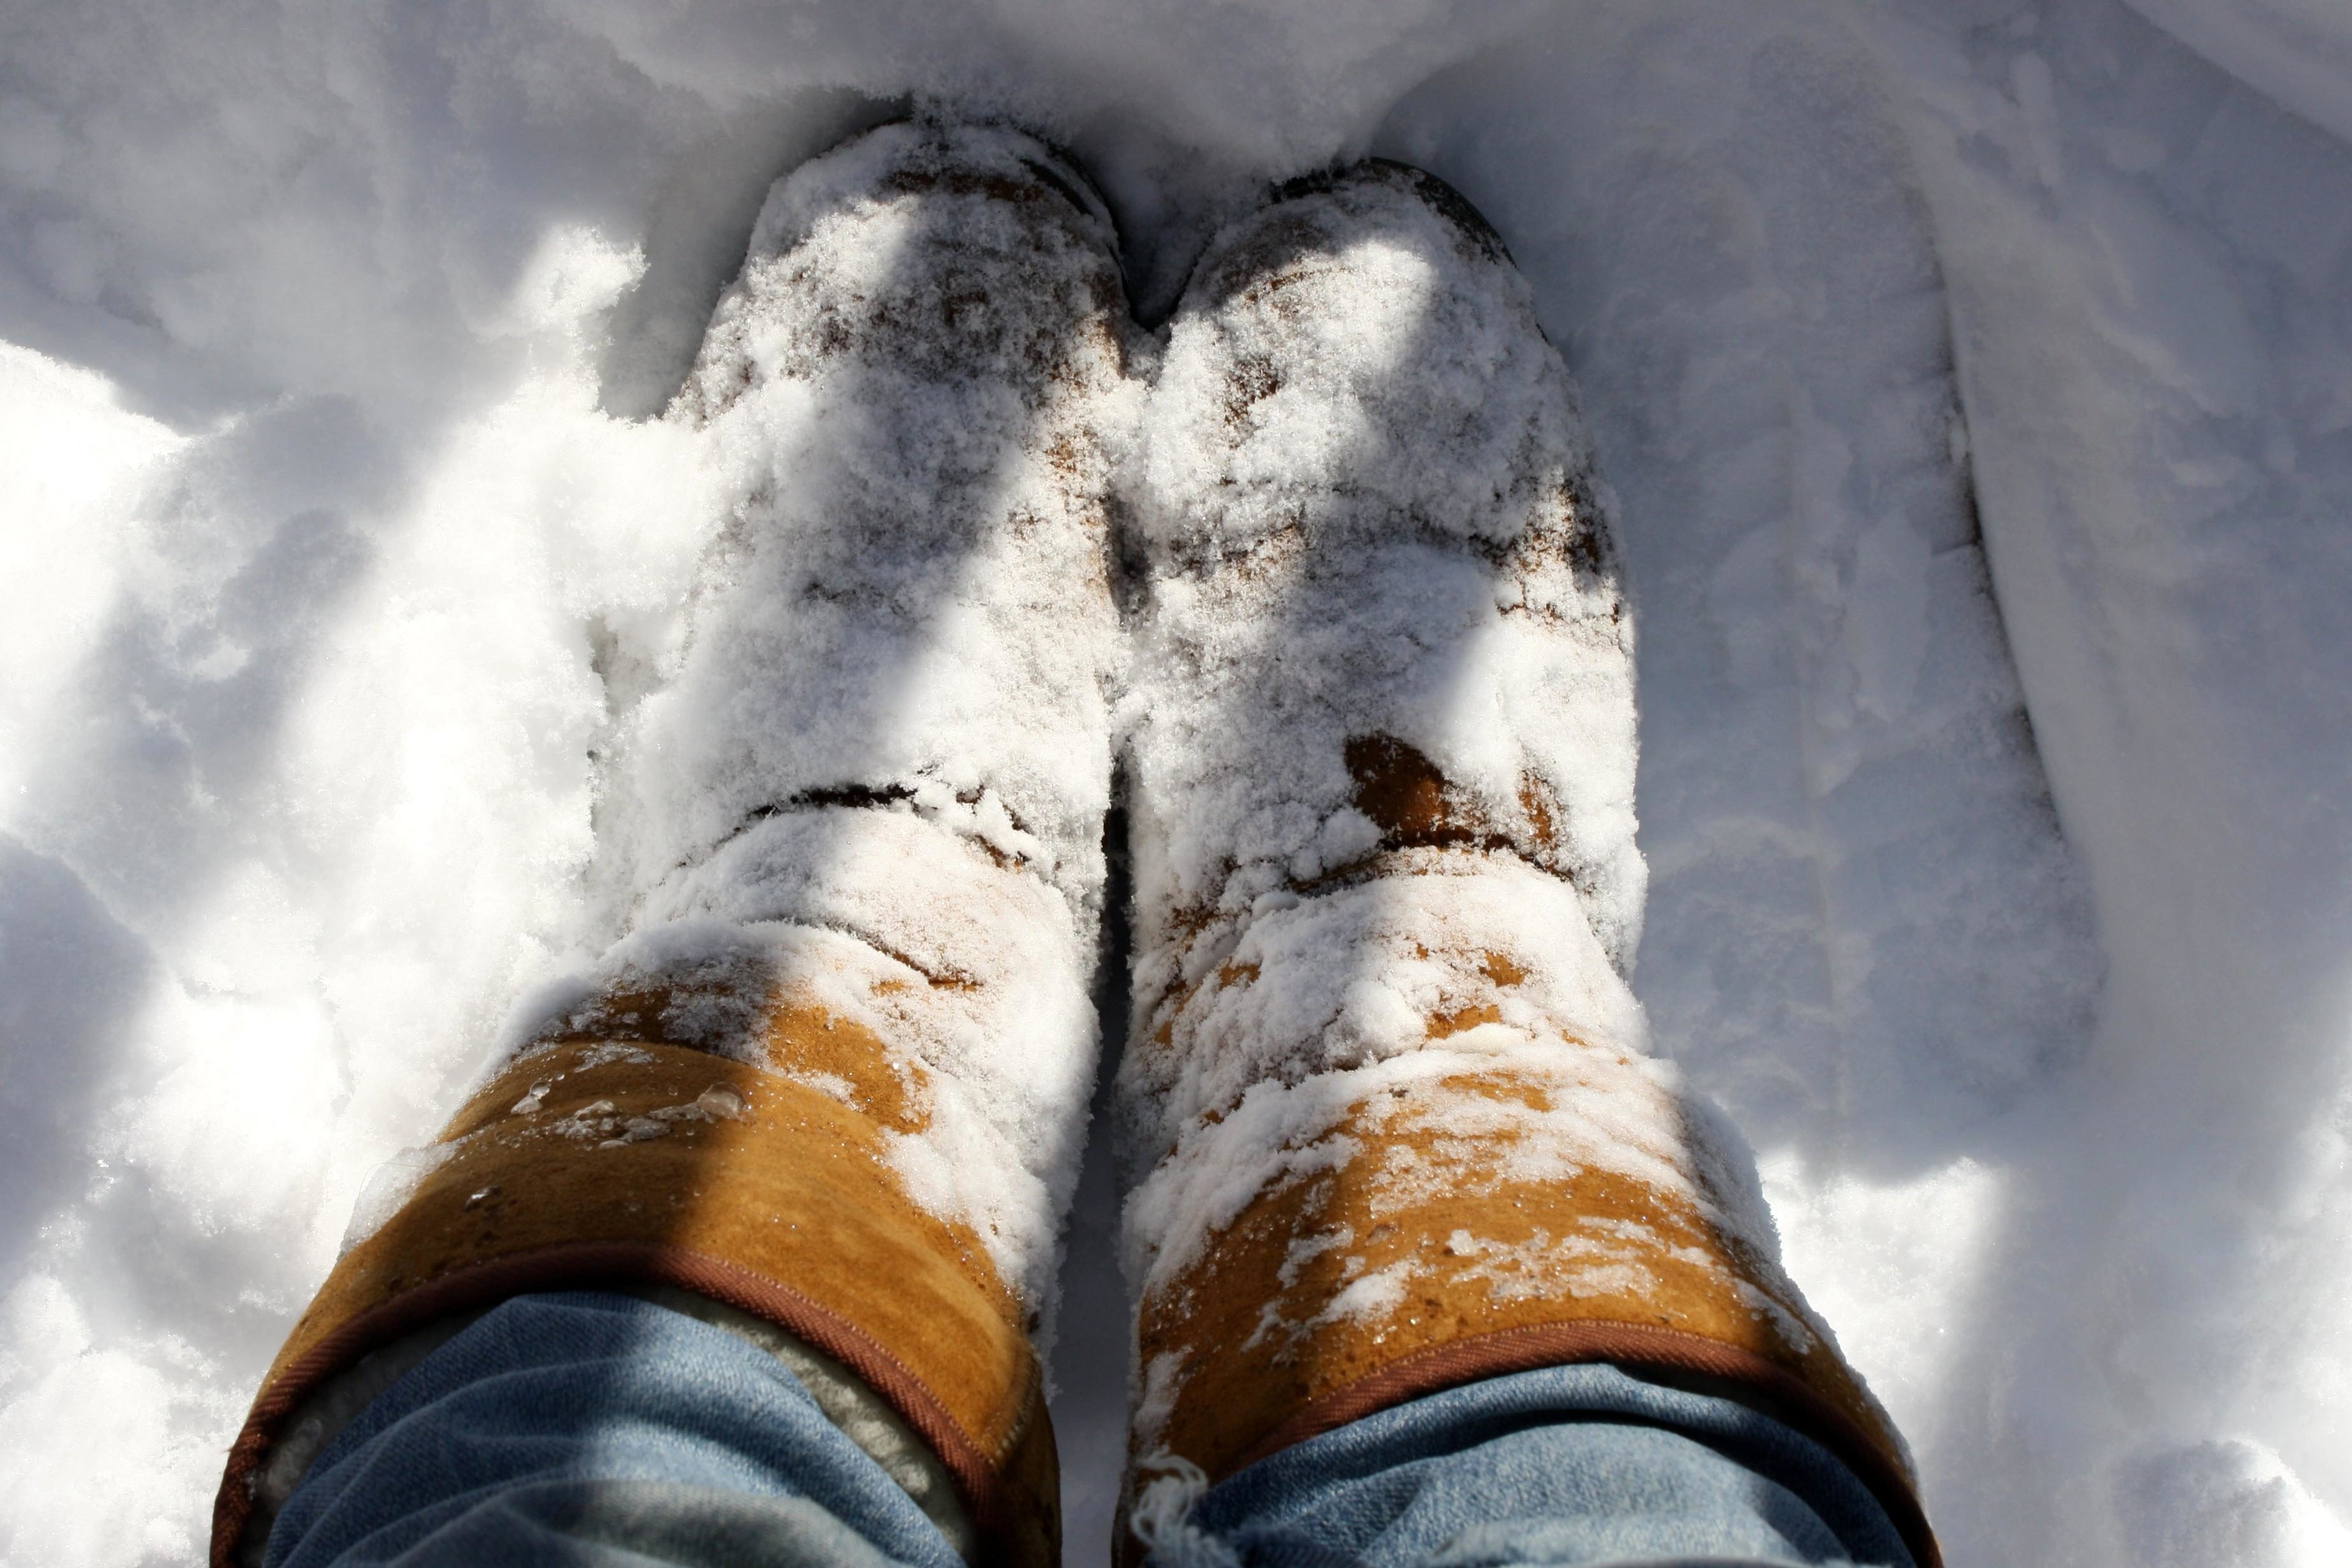 Снег обувь